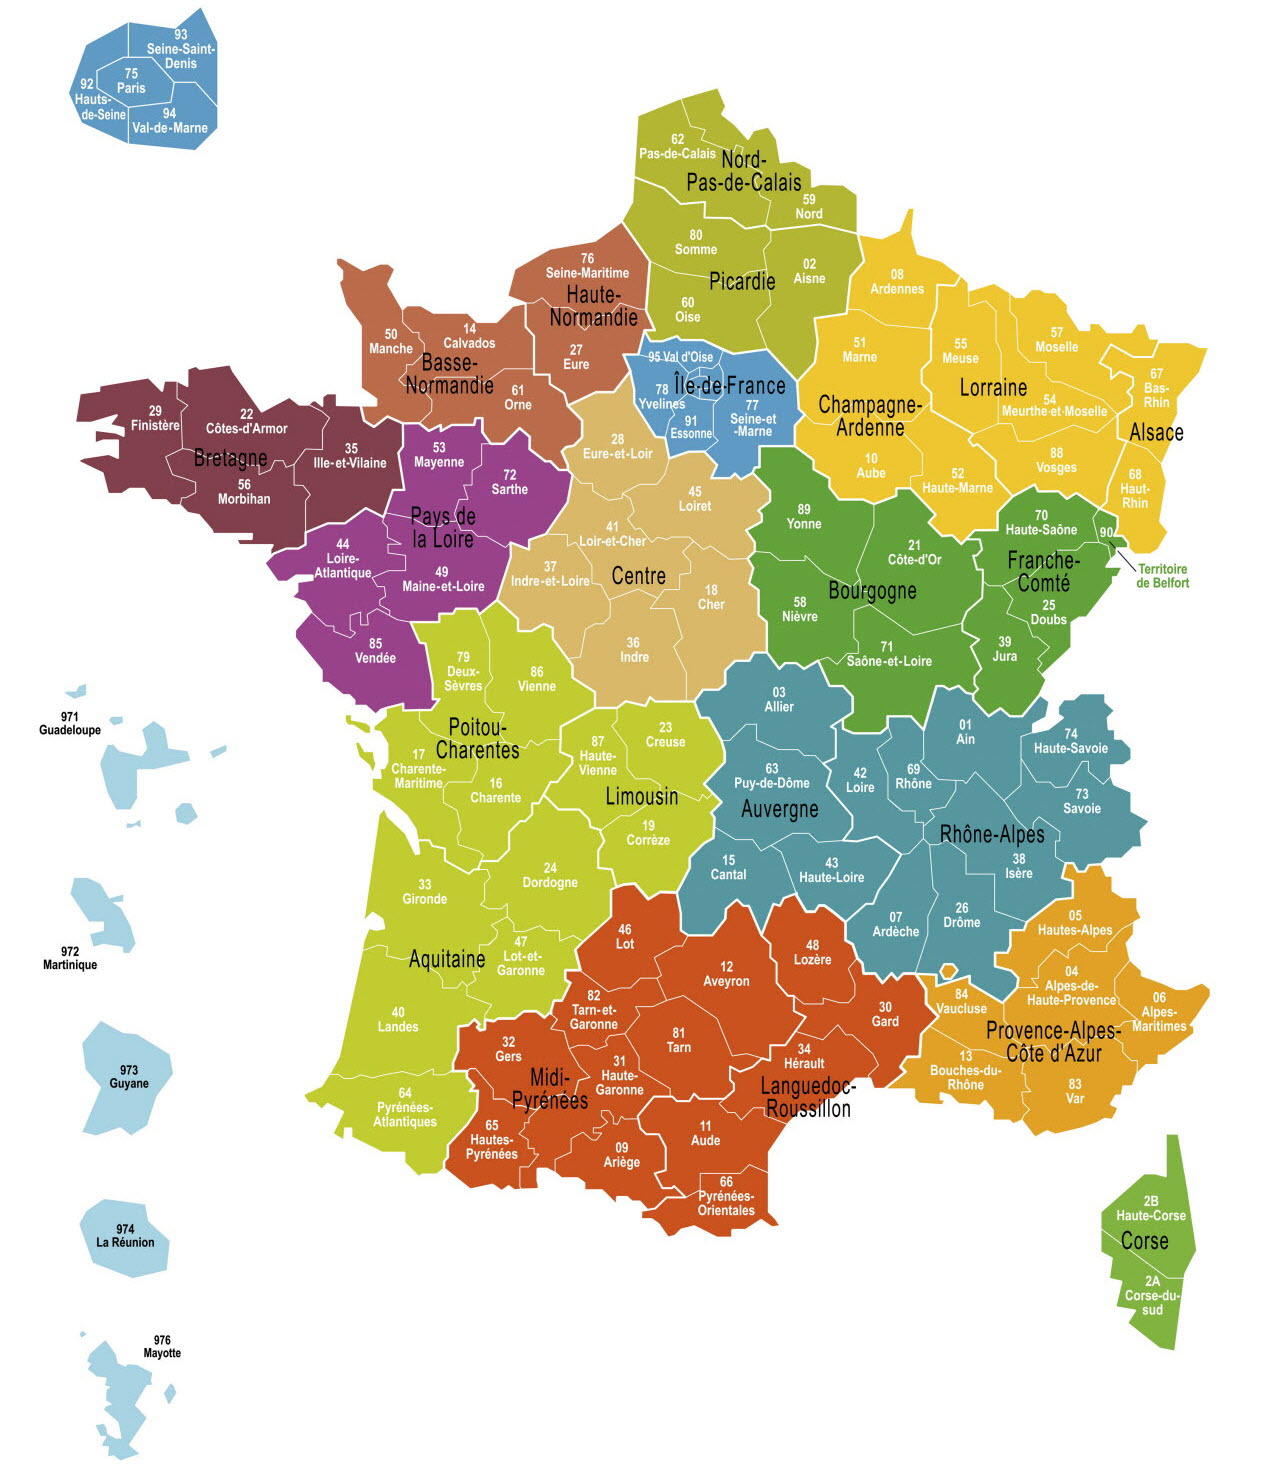 Courrier - Champagne-Ardenne, Lorraine, Alsace. Région Nord-Est